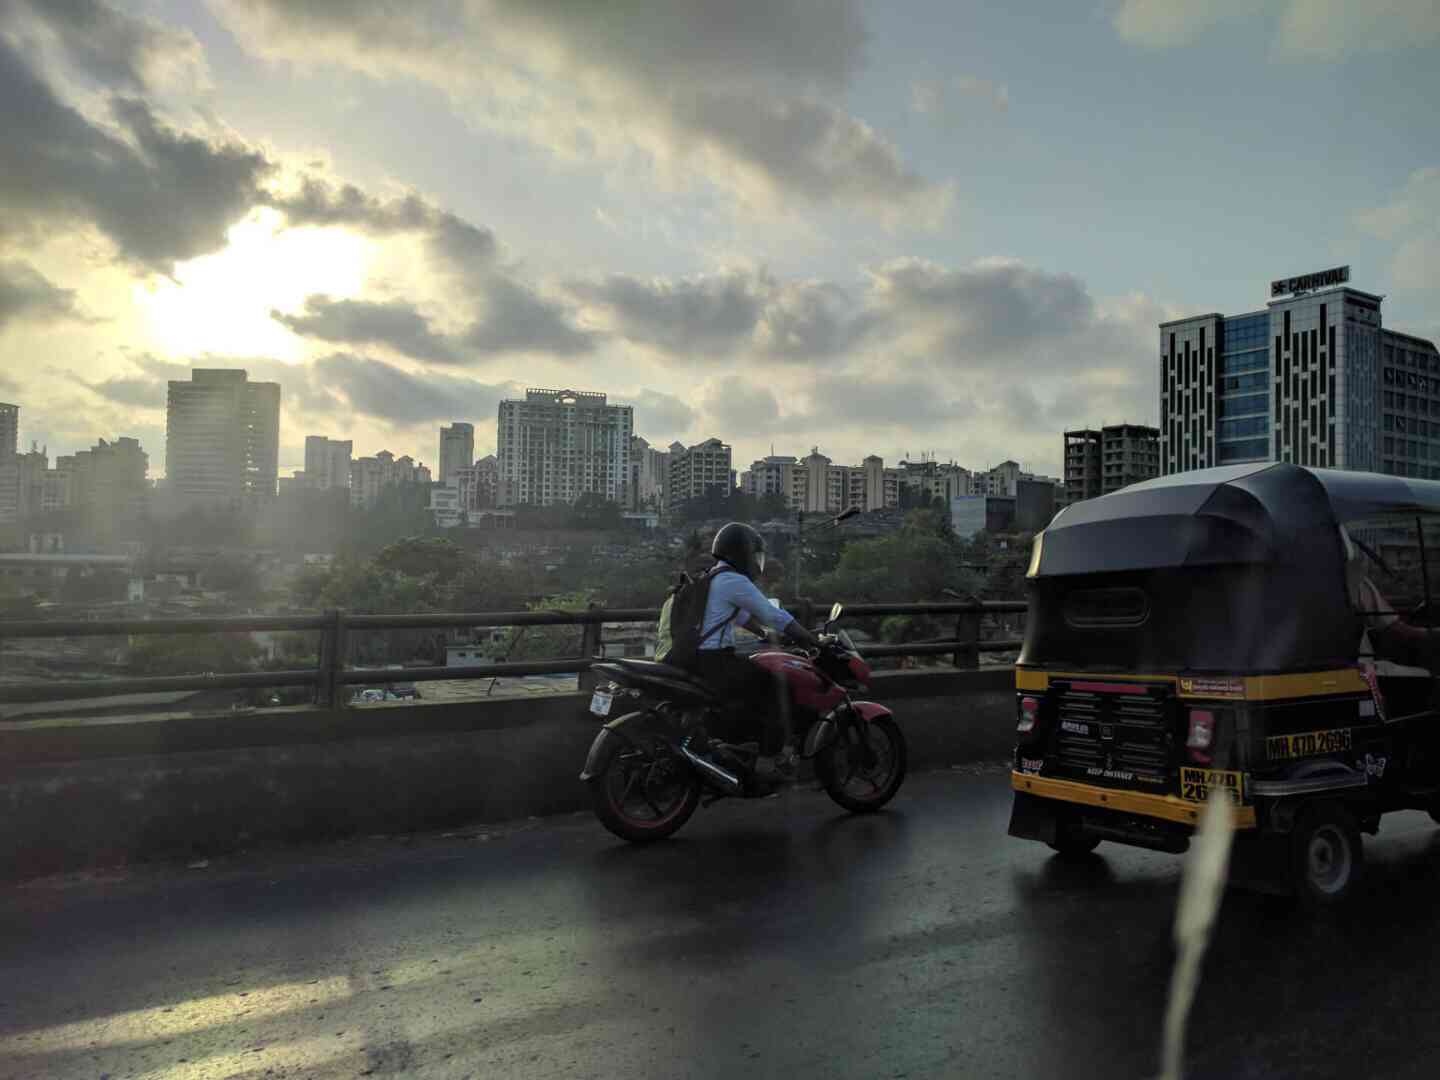 Mumbai highway